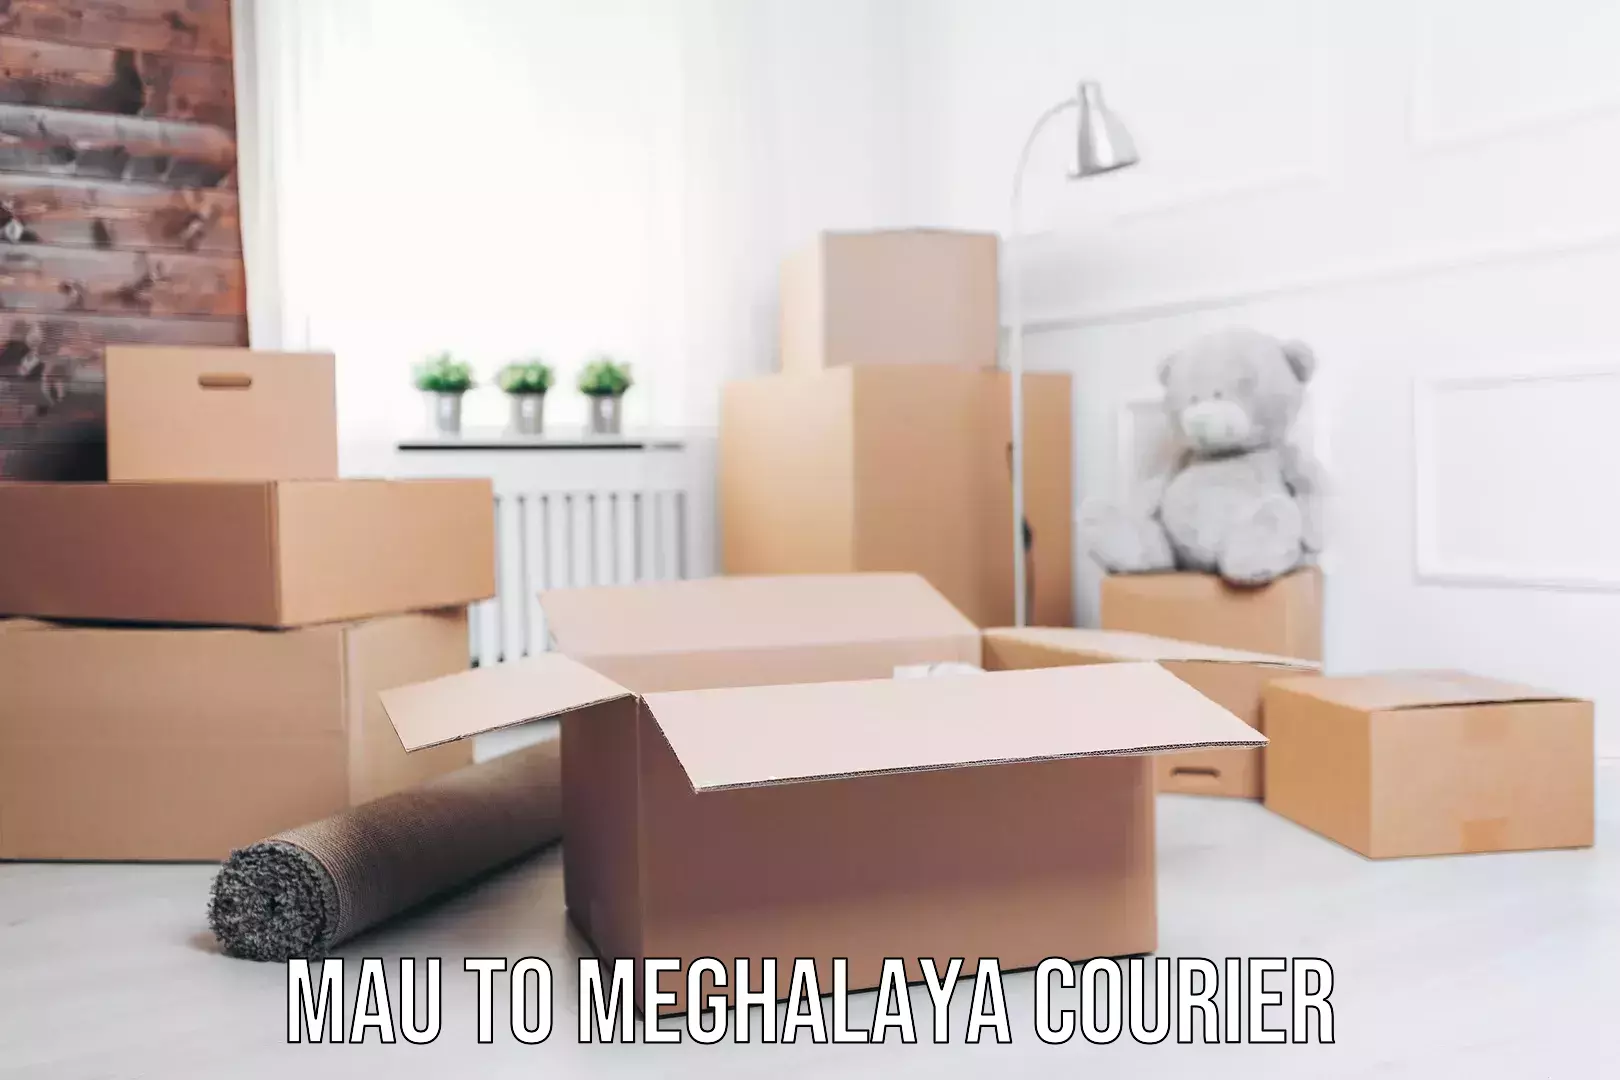 Furniture transport experts Mau to Meghalaya